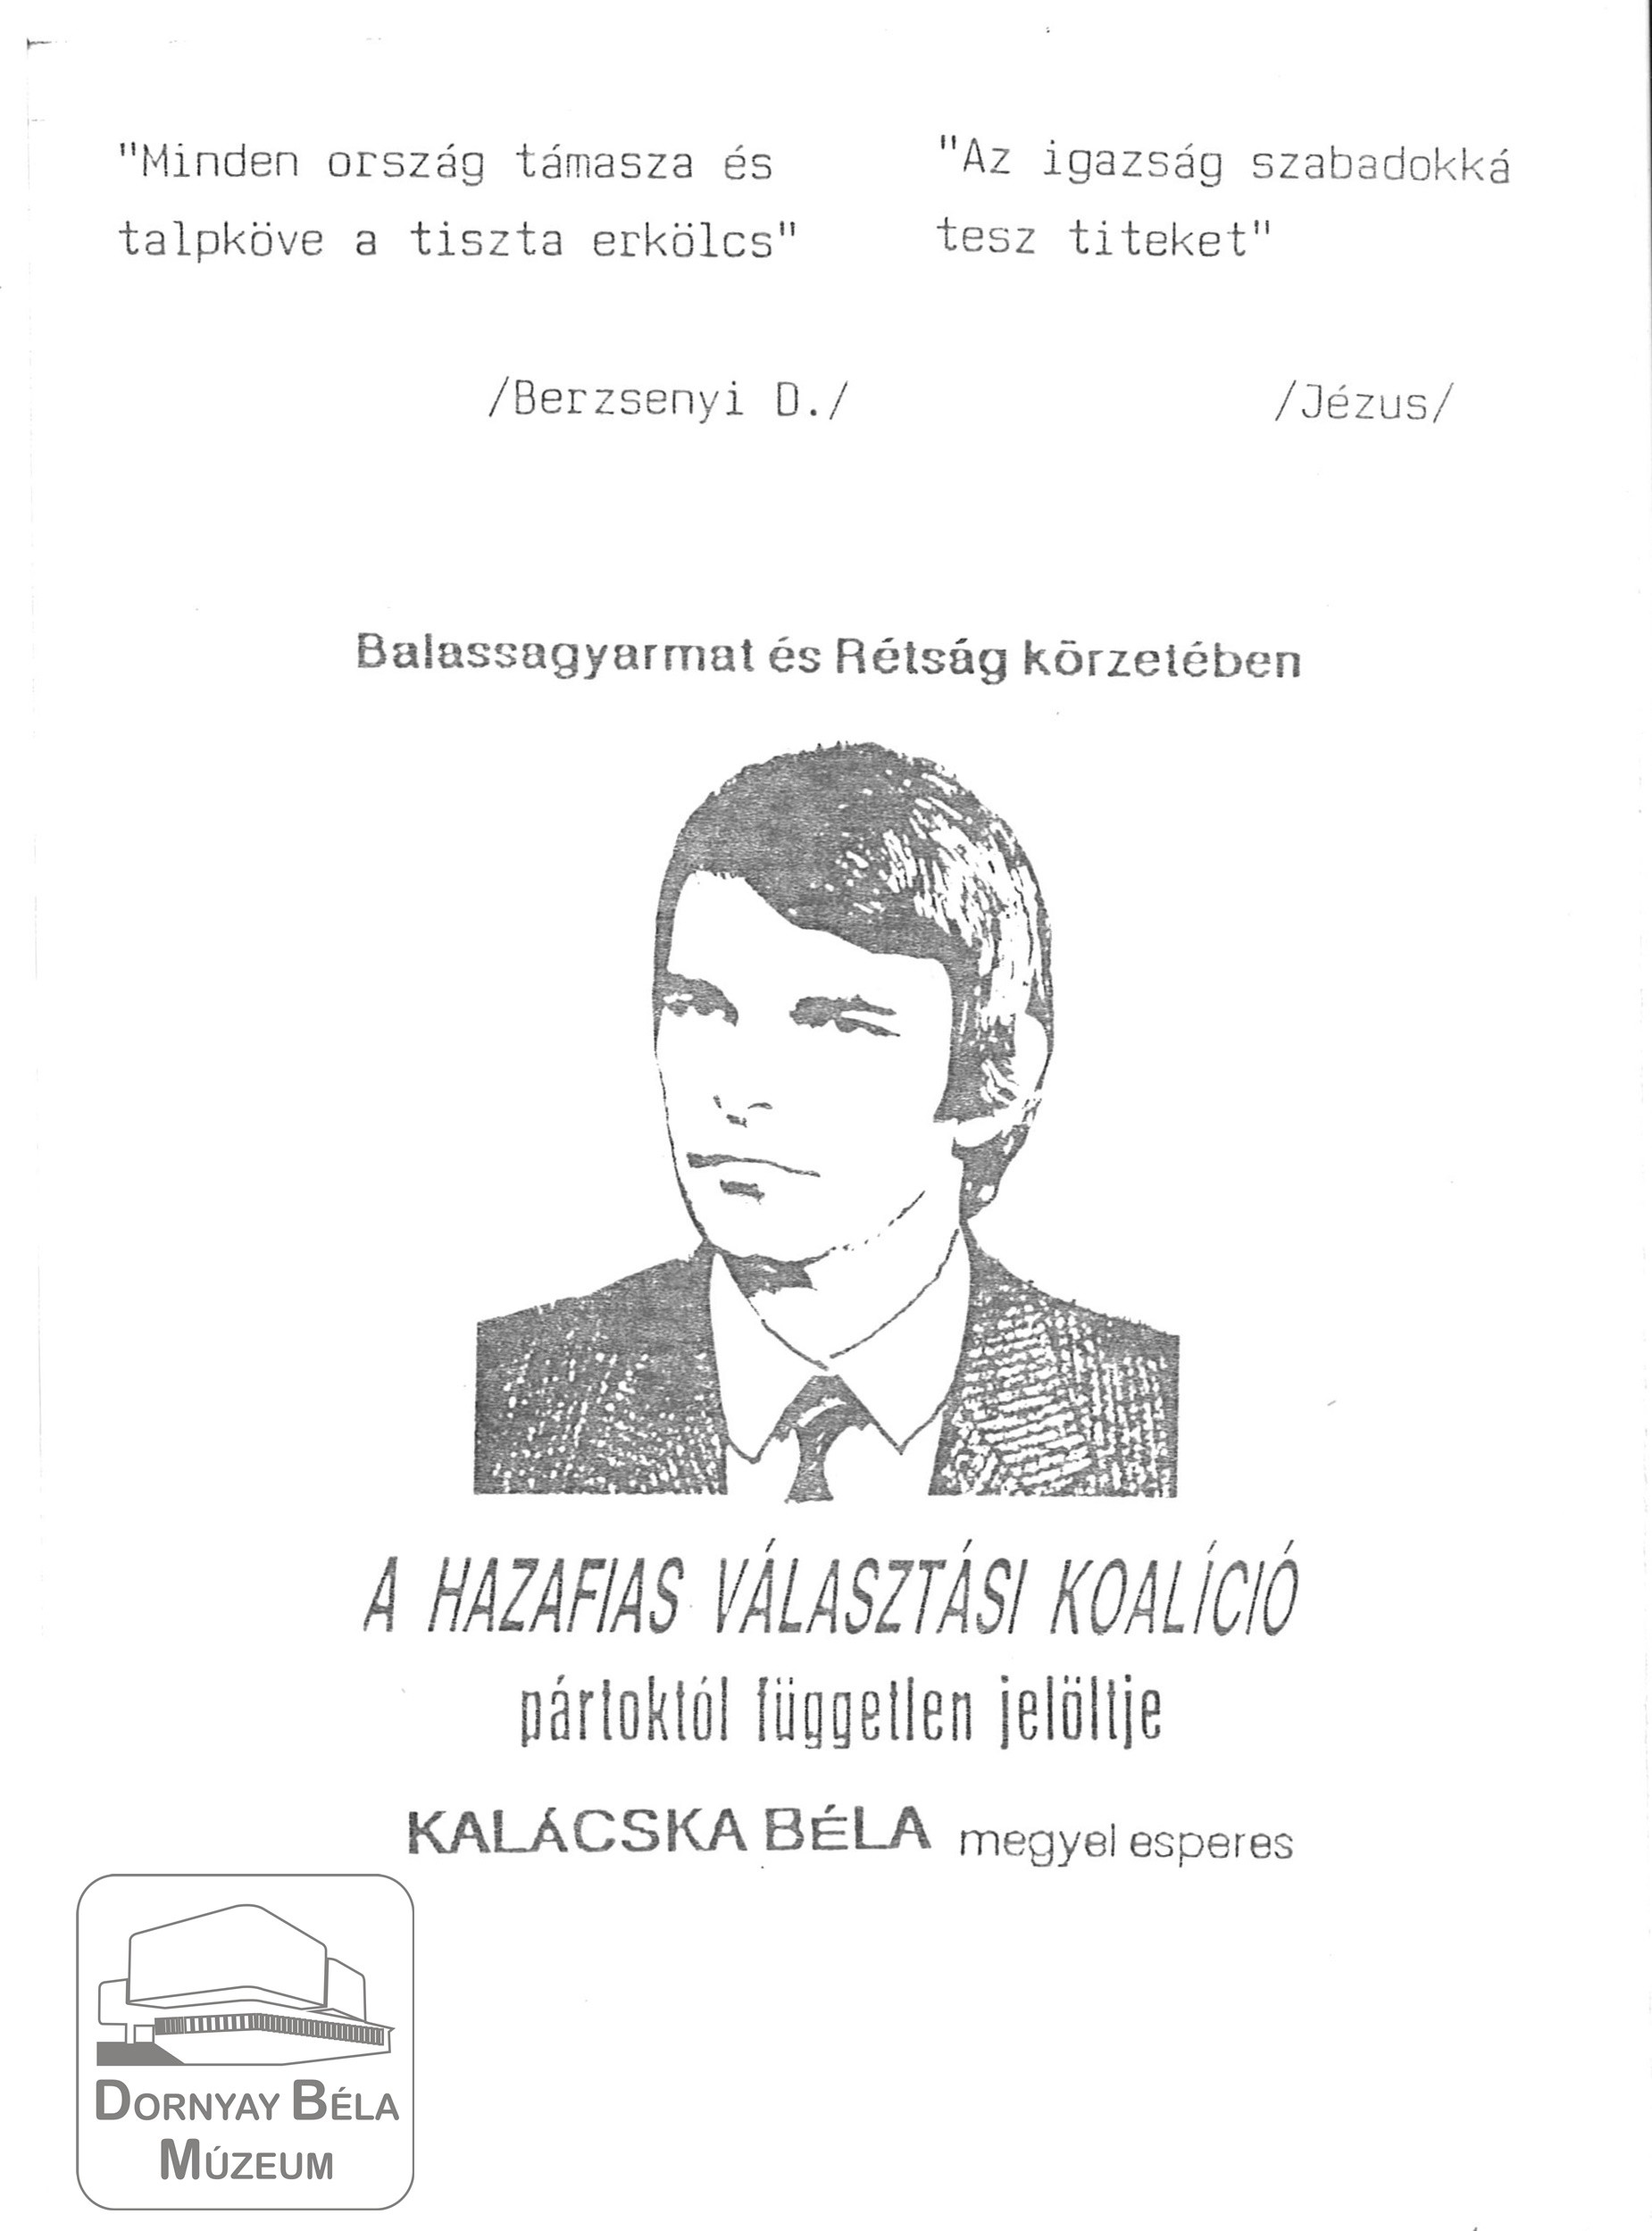 A Hazafias választási koalíció pártoktól független jelöltjének, Kalácska Bélának rövid program ismertetője. (Dornyay Béla Múzeum, Salgótarján CC BY-NC-SA)